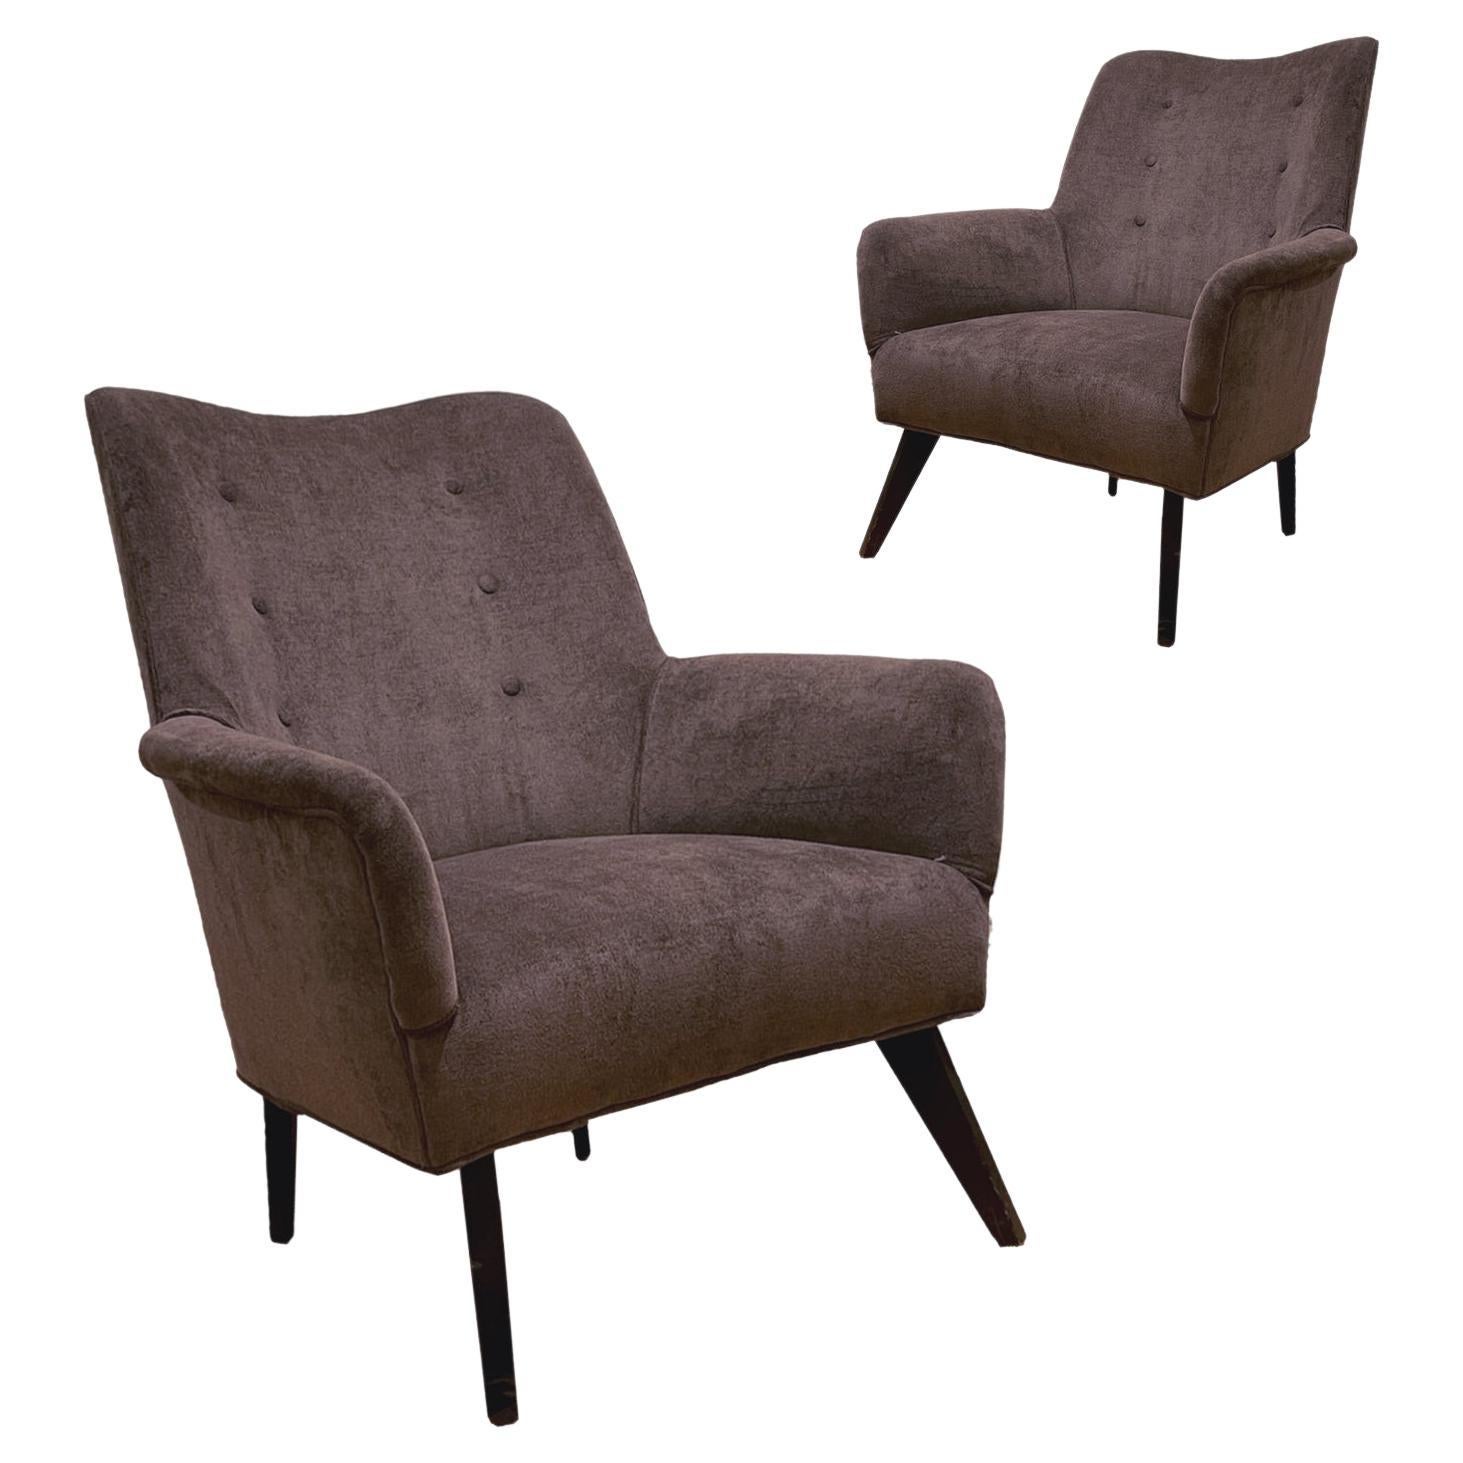 Pair of Sleek Italian Sculptural Midcentury Modern Chairs, New Velvet Upholstery